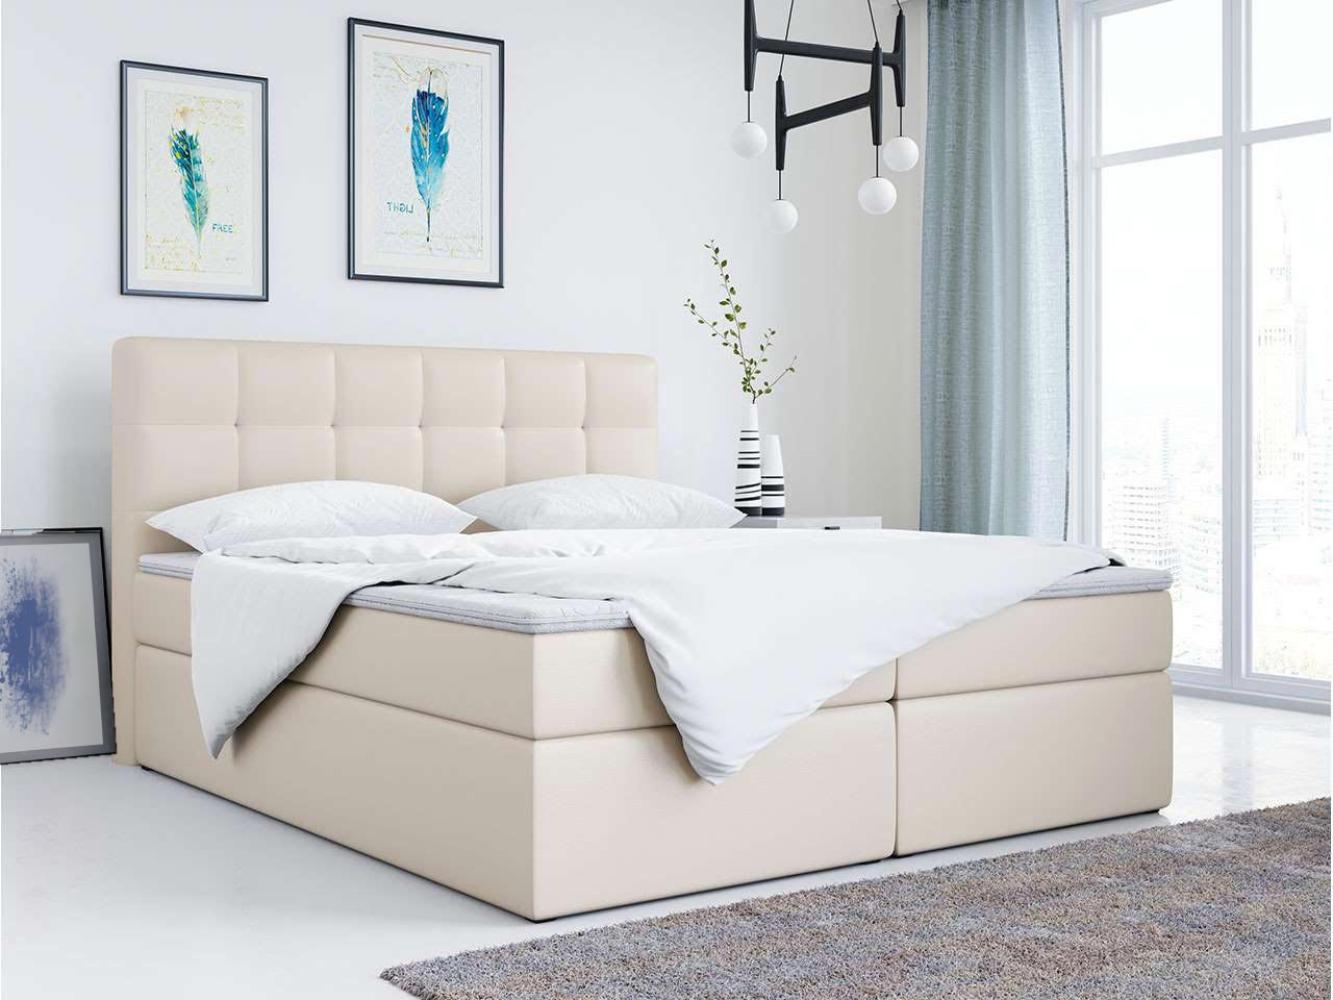 Doppelbett Polsterbett Kunstlederbett mit Bettkasten - TOP-2 - 200x200cm - Beige Kunstleder - H3 Bild 1